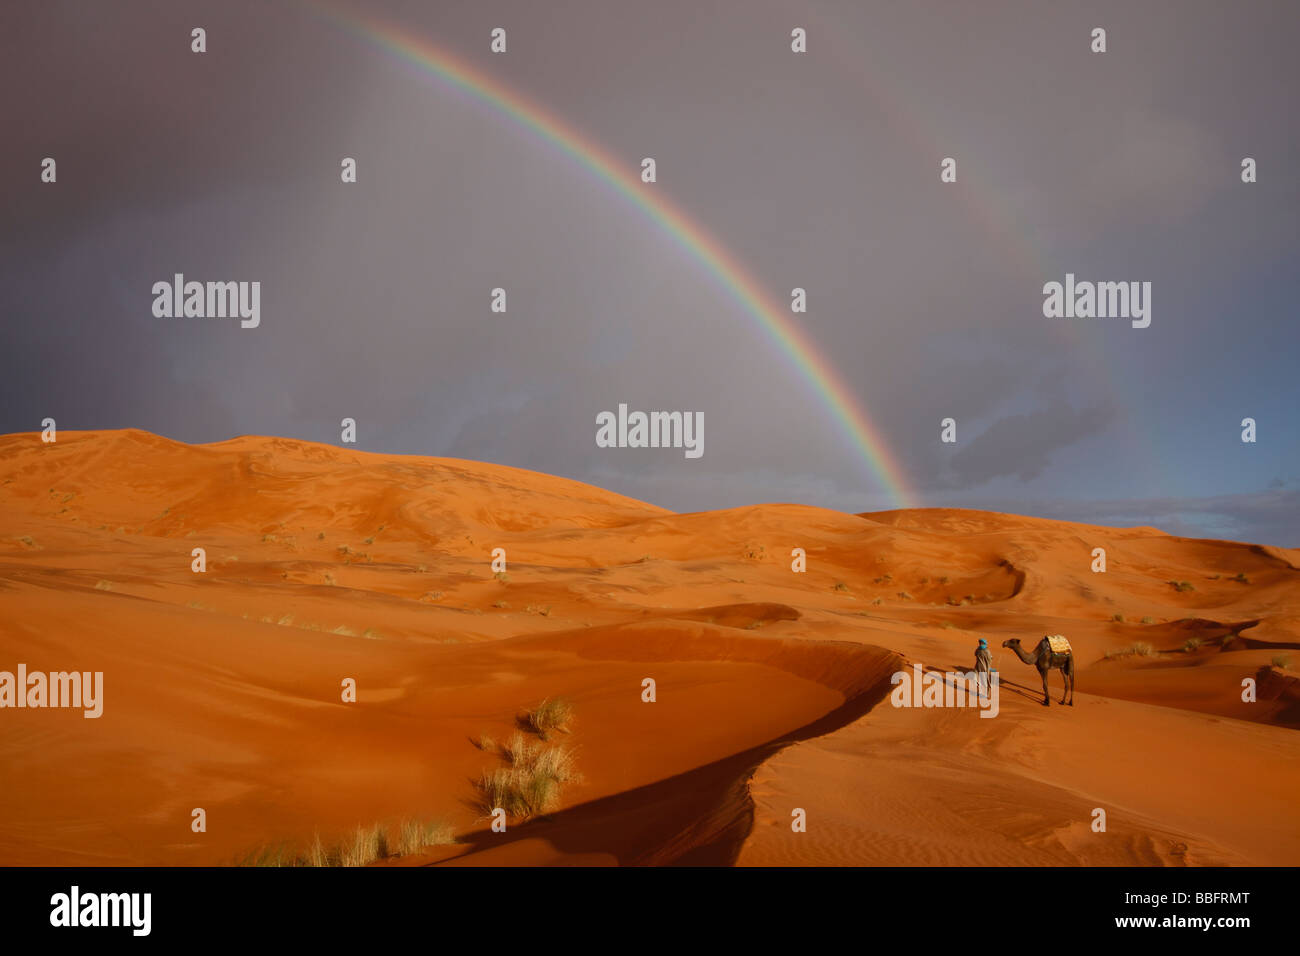 África, África del Norte, Marruecos, el desierto del Sahara, Merzouga, Erg Chebbi, líder Tribesman bereber, arco iris de camellos en el desierto Foto de stock